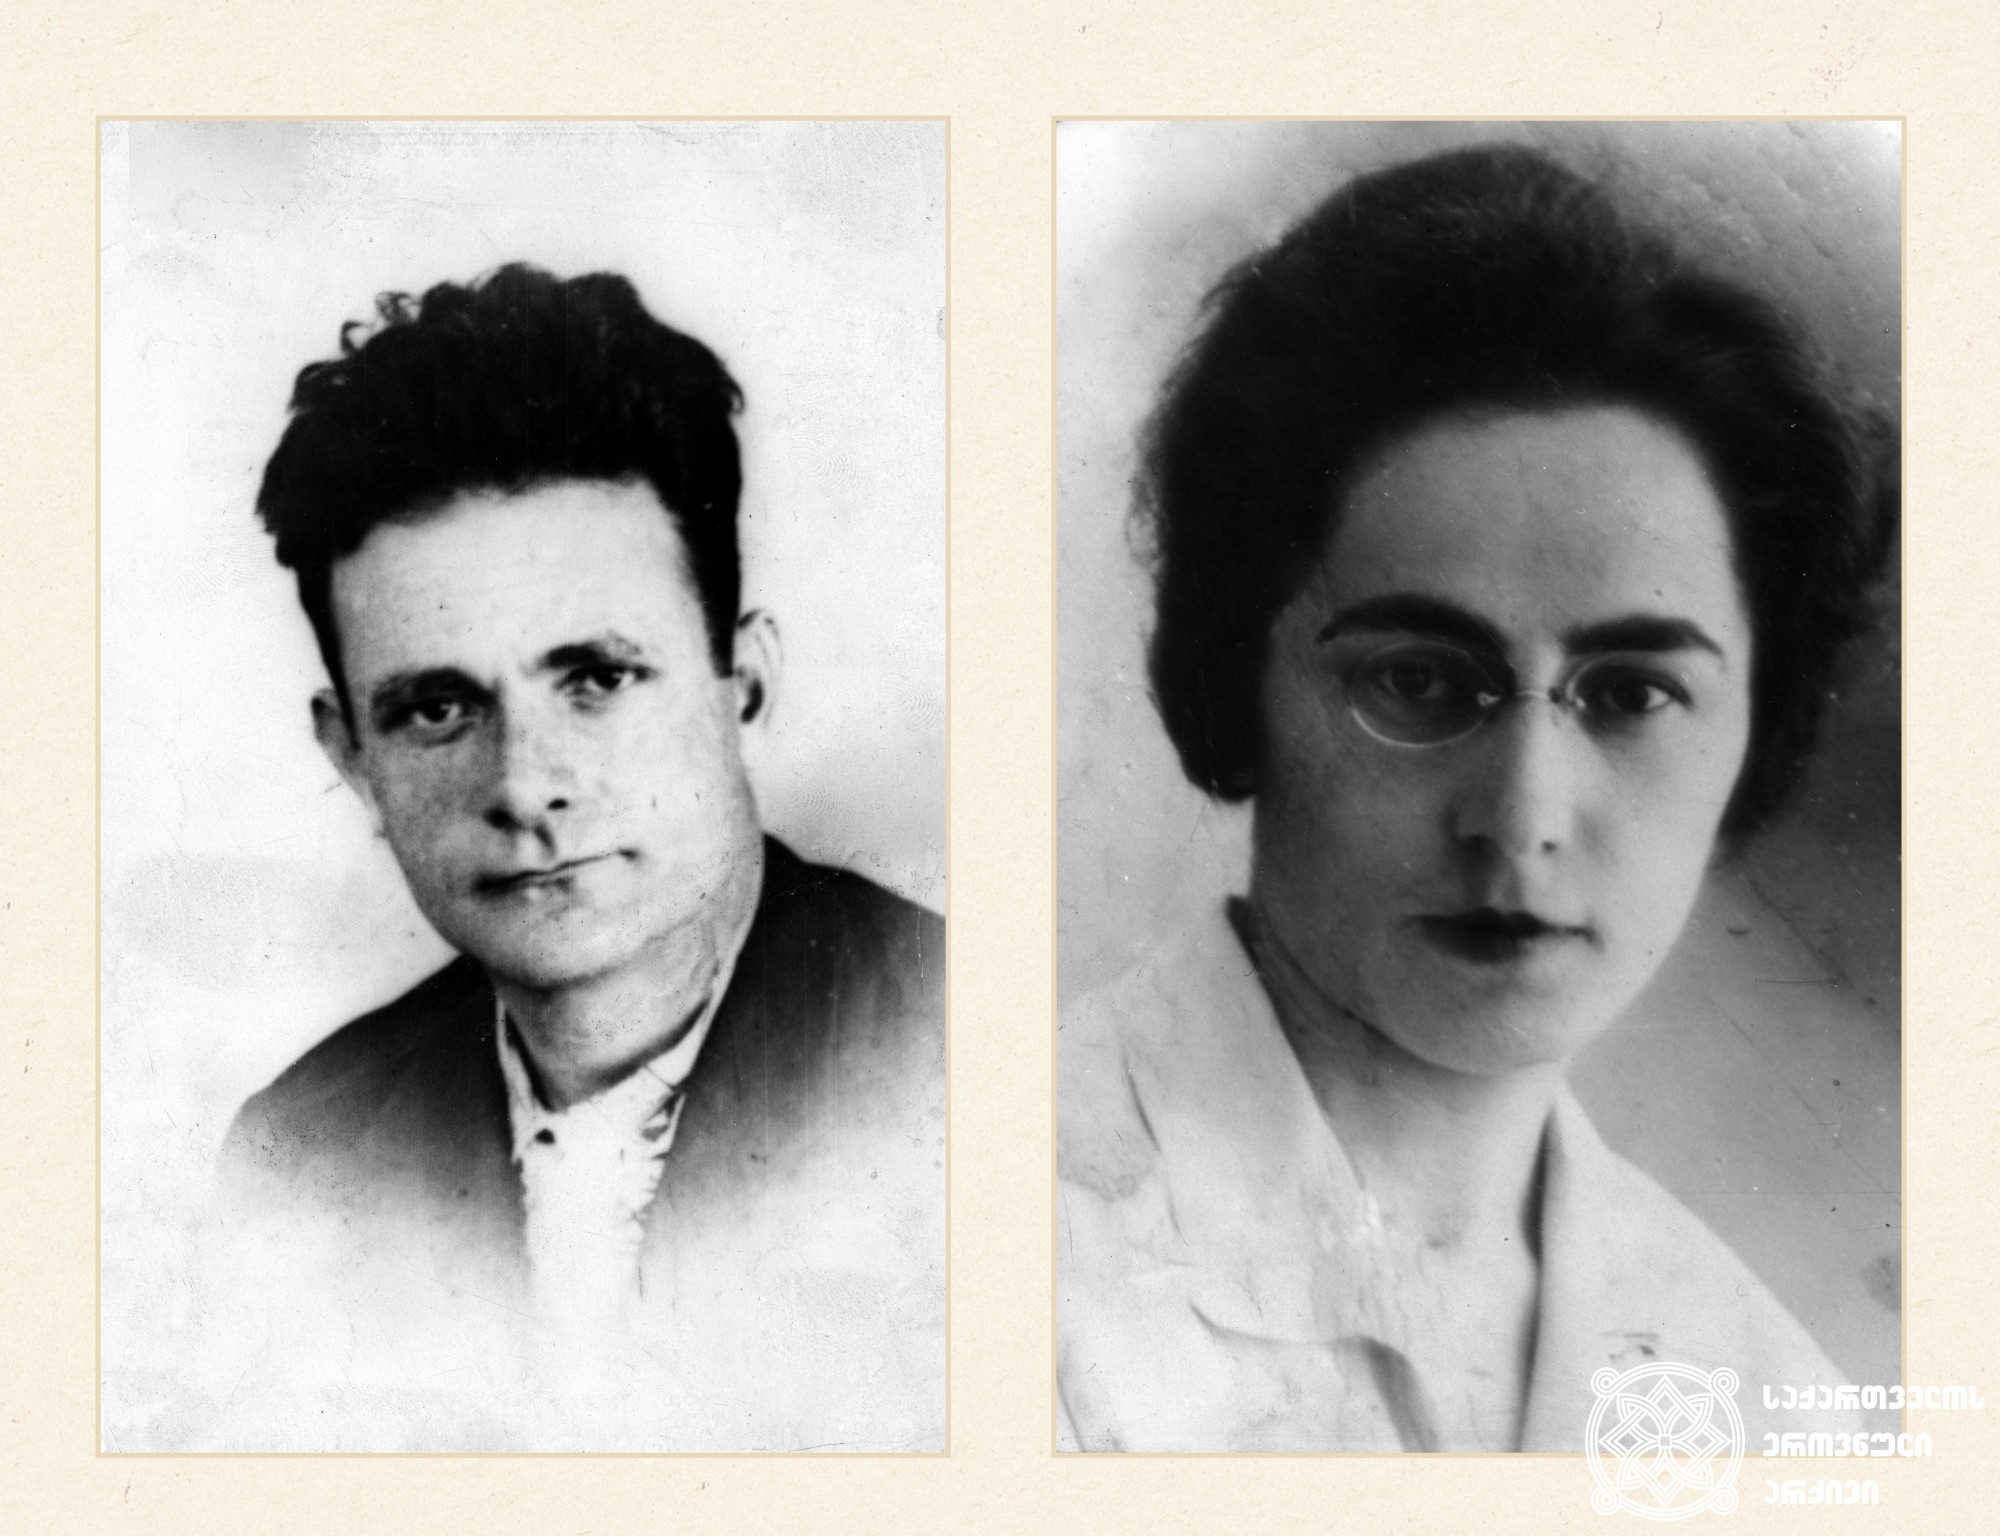 ვიქტორ გვარამია და მისი მეუღლე ტერეზა სახოკია. <br>
ვიქტორ გვარამია (1899-1937) - ეკონომისტი, საქართველოს მიწათმოქმედების კომისრის მოადგილე. <br>
ტერეზა სახოკია (1902-1988) - ექიმი, მეუღლის დაპატიმრების შემდეგ გადაასახლეს.<br>

Viktor Gvaramia and his wife Tereza Sakhokia. <br>
Victor Gvaramia (1899-1937) - Economist, deputy commissioner of agriculture of Georgia. <br>
Tereza Sakhokia (1902-1988) - a doctor, she was exiled after the exile of her husband.